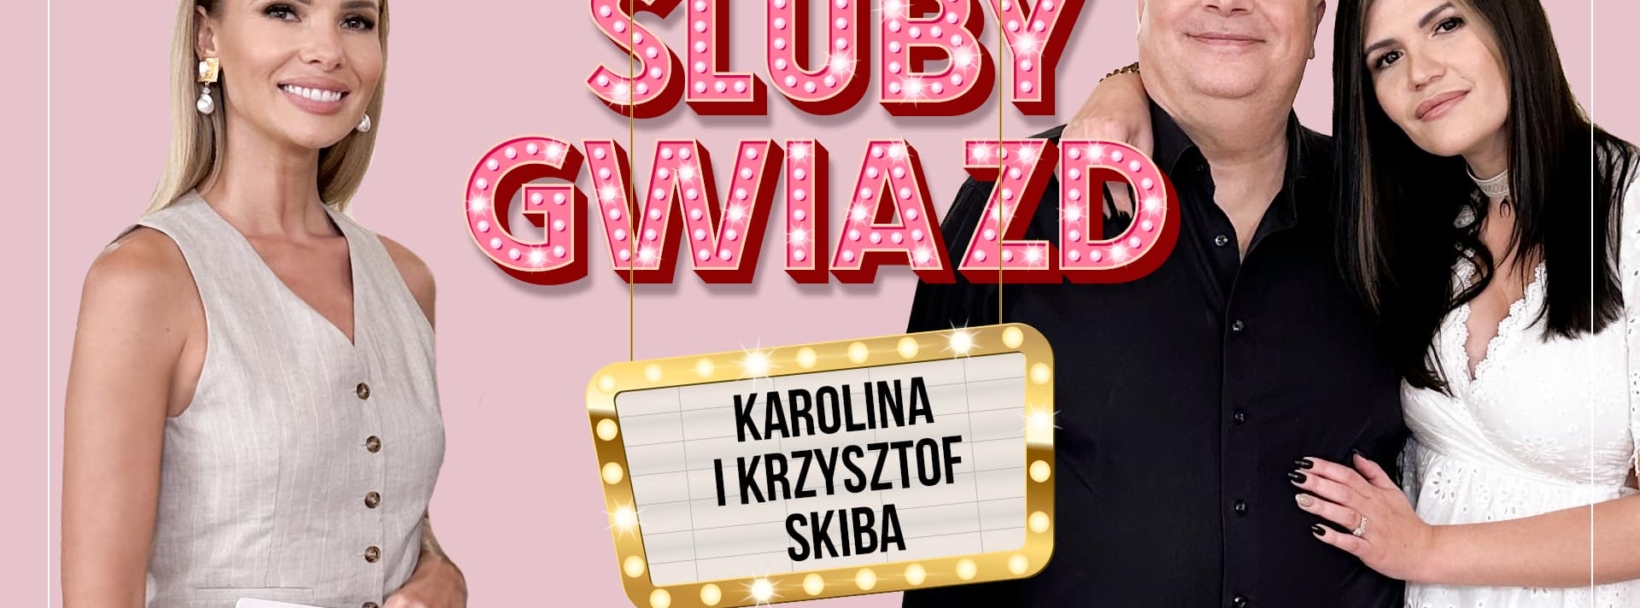 Śluby Gwiazd: Karolina i Krzysztof SKiba